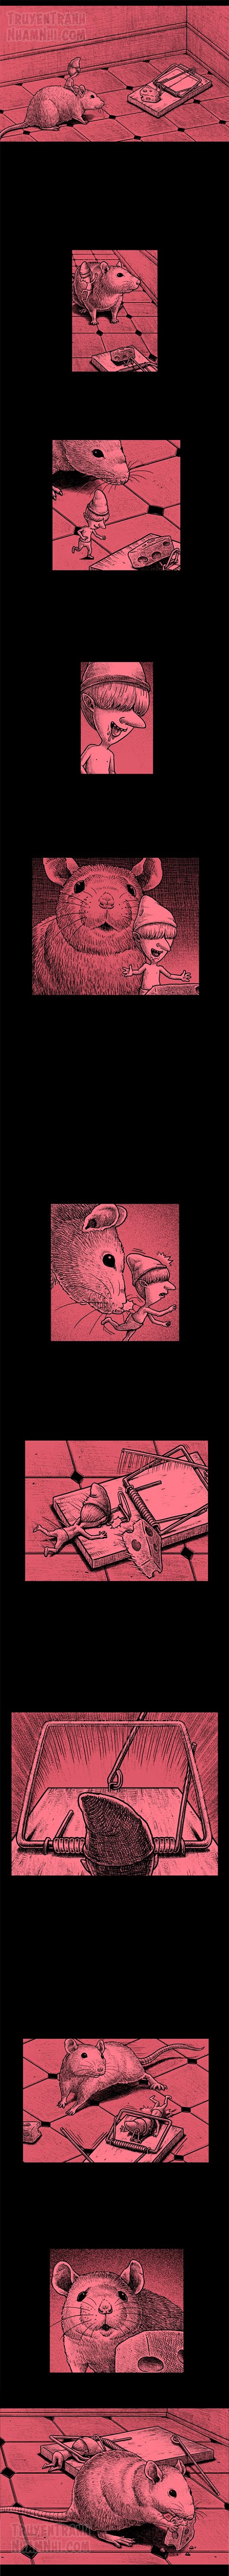 Hắc Ám Truyện #141: Bẫy chuột